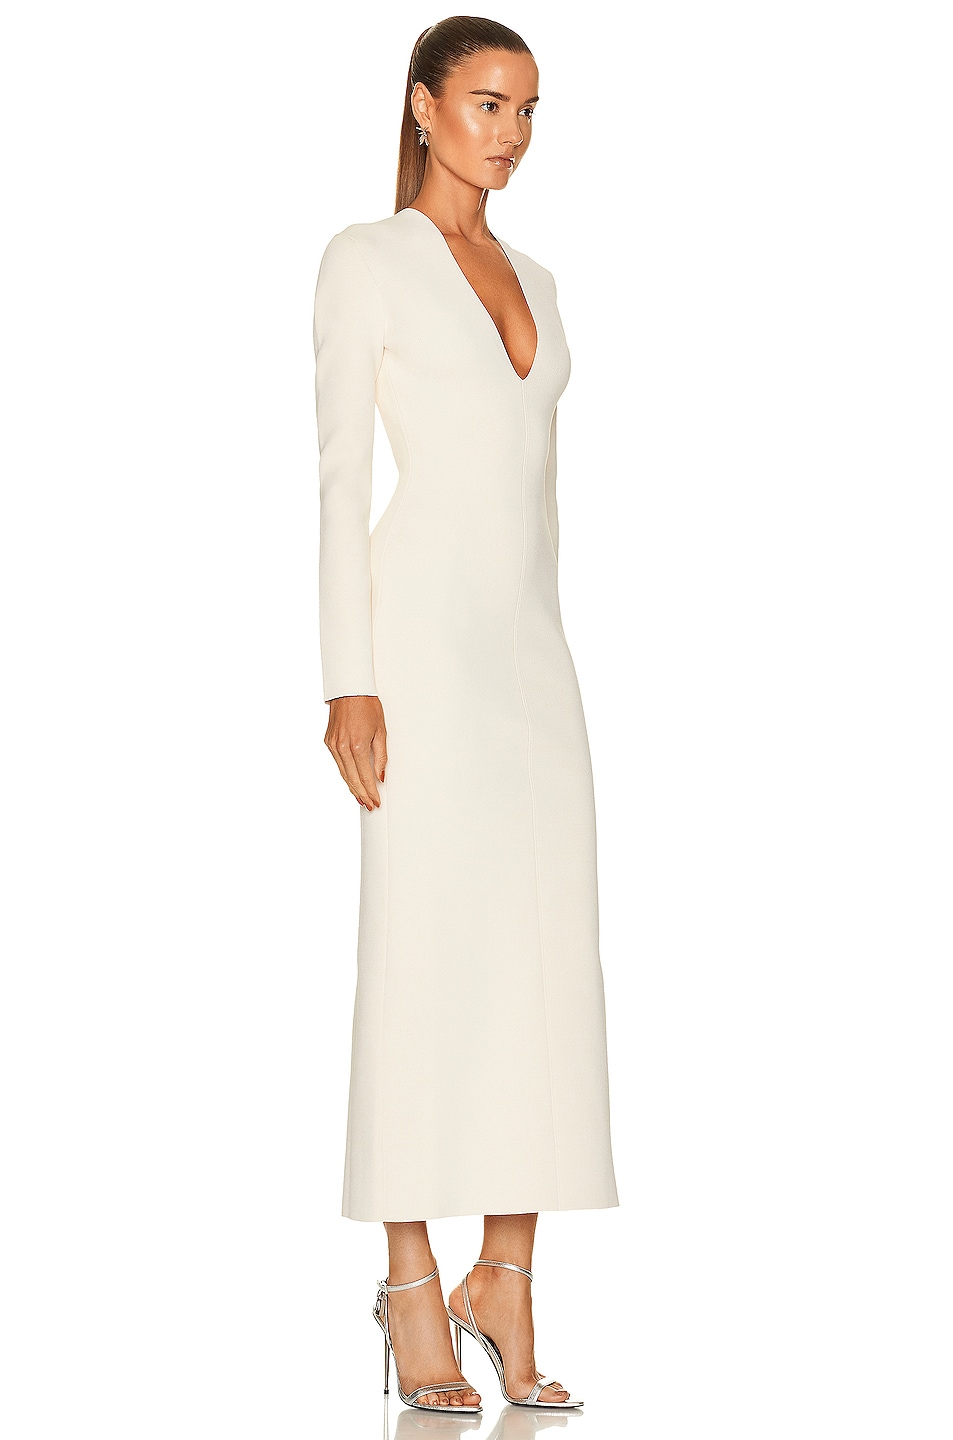 KHAITE Odette Dress in Ivory | FWRD